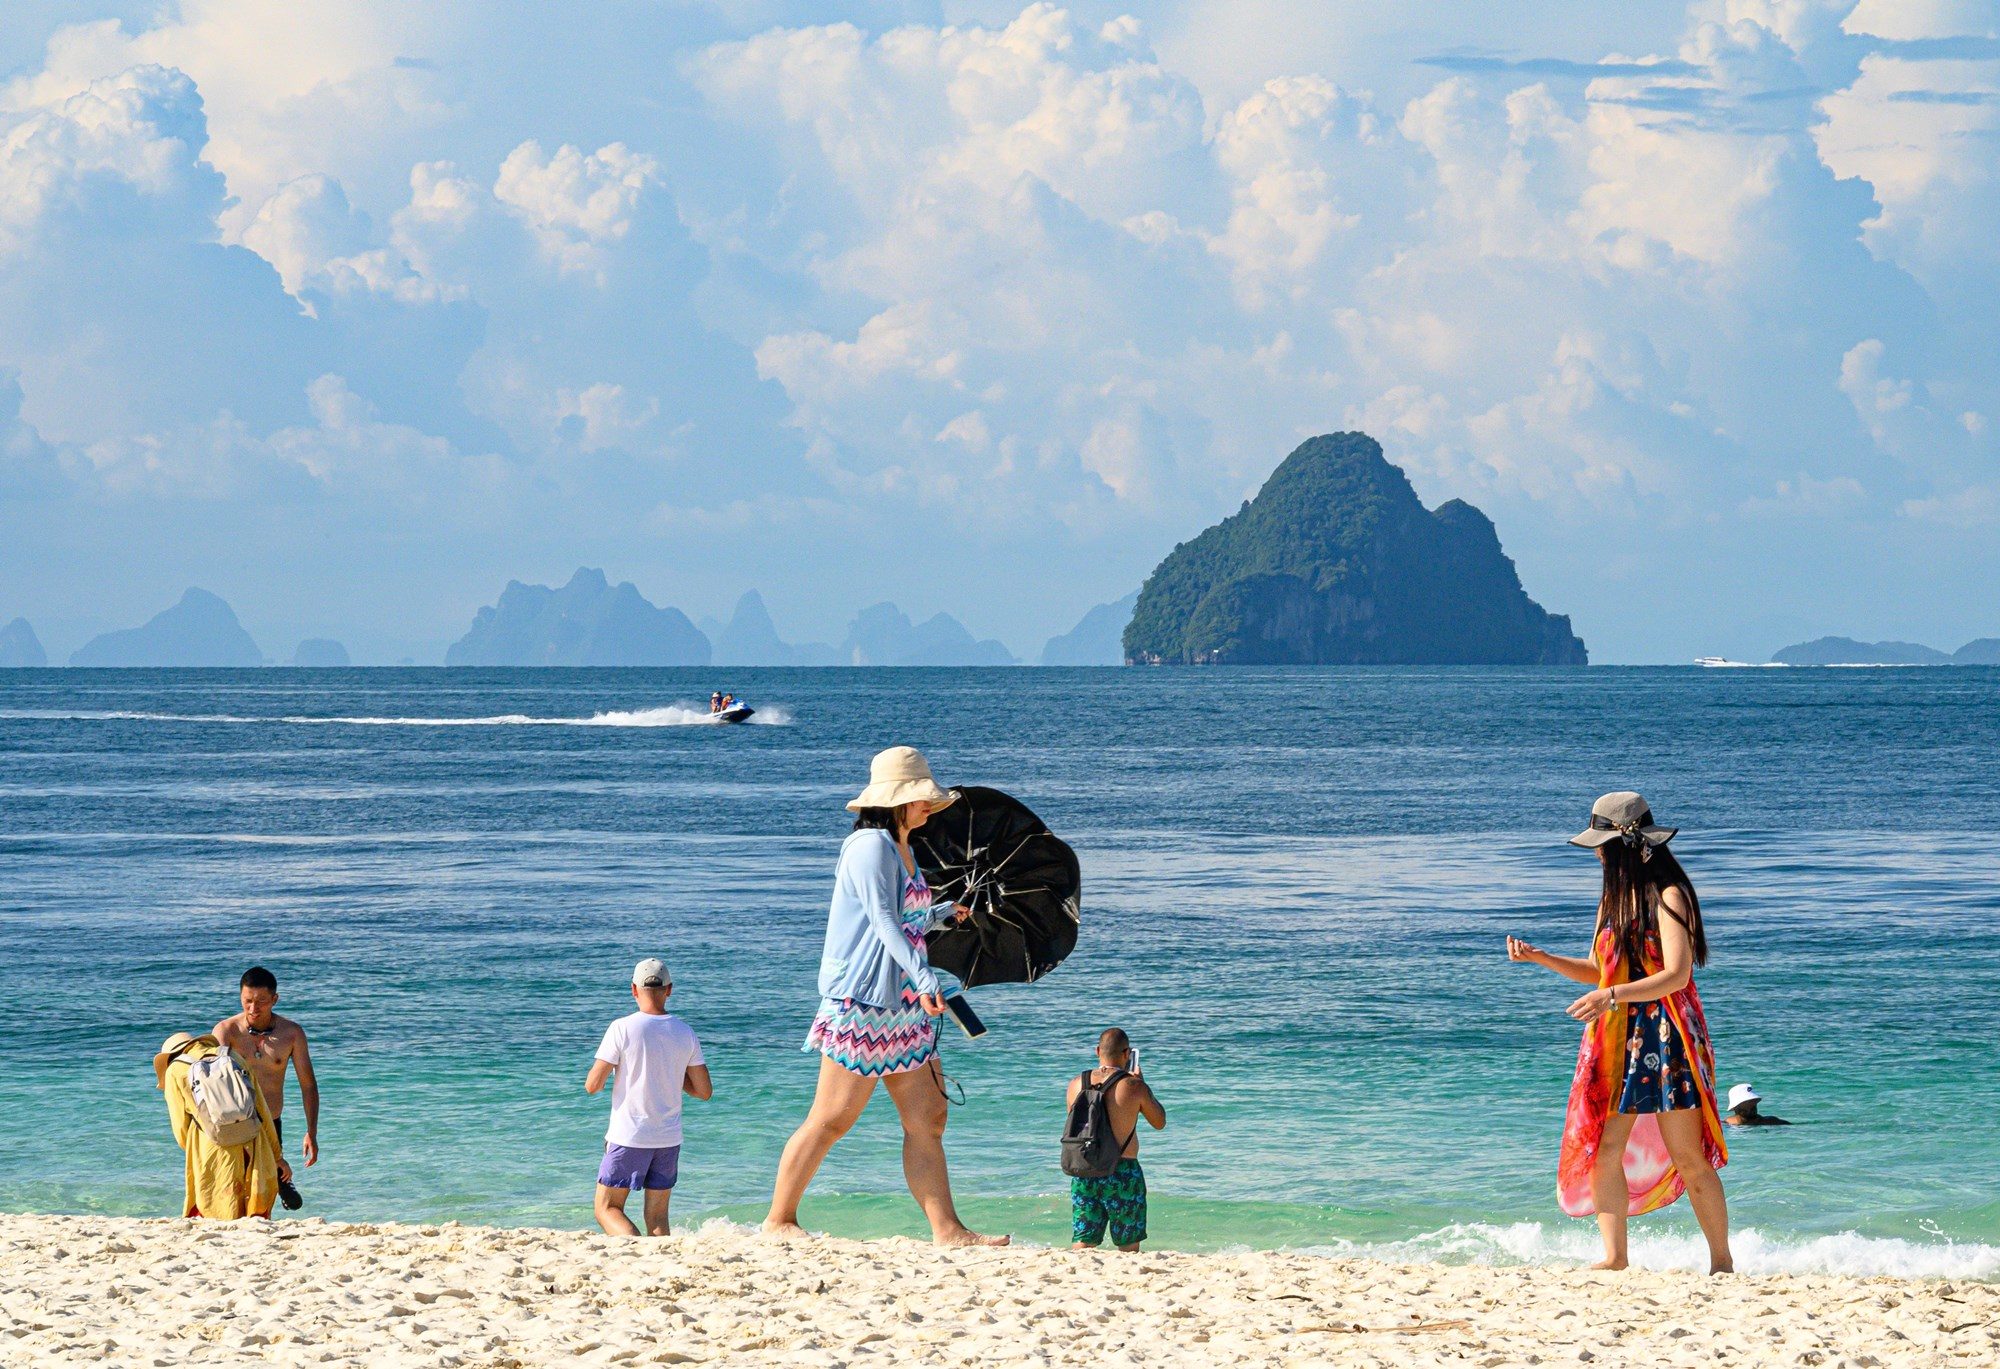 เทศมองไทย : นักท่องเที่ยวยุโรป สัญญาณอันตรายท่องเที่ยวไทย - มติชนสุดสัปดาห์